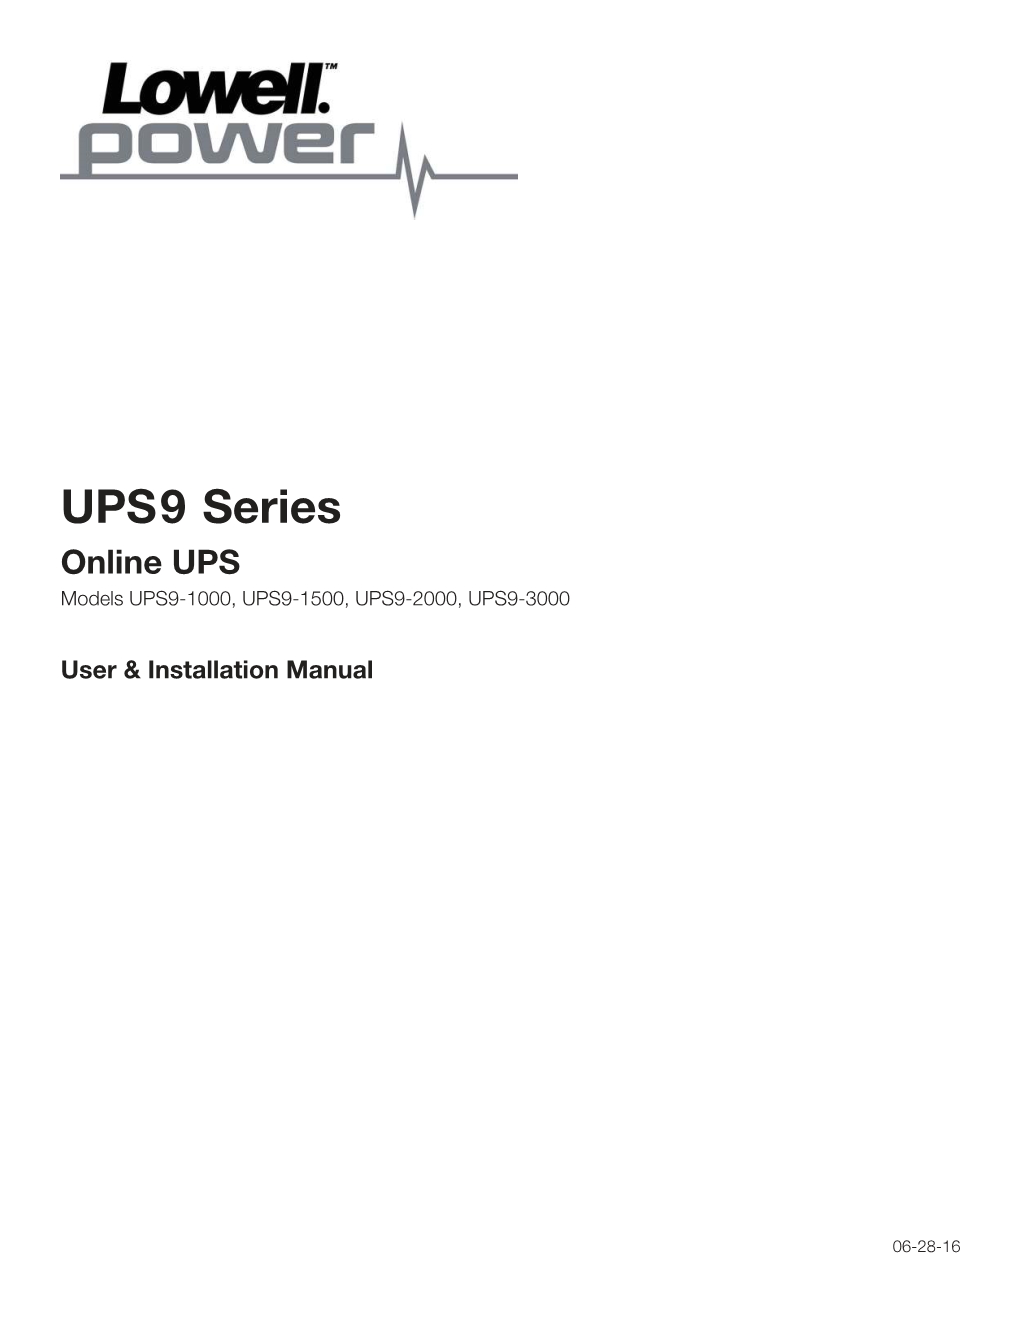 UPS9 Series Online UPS Models UPS9-1000, UPS9-1500, UPS9-2000, UPS9-3000